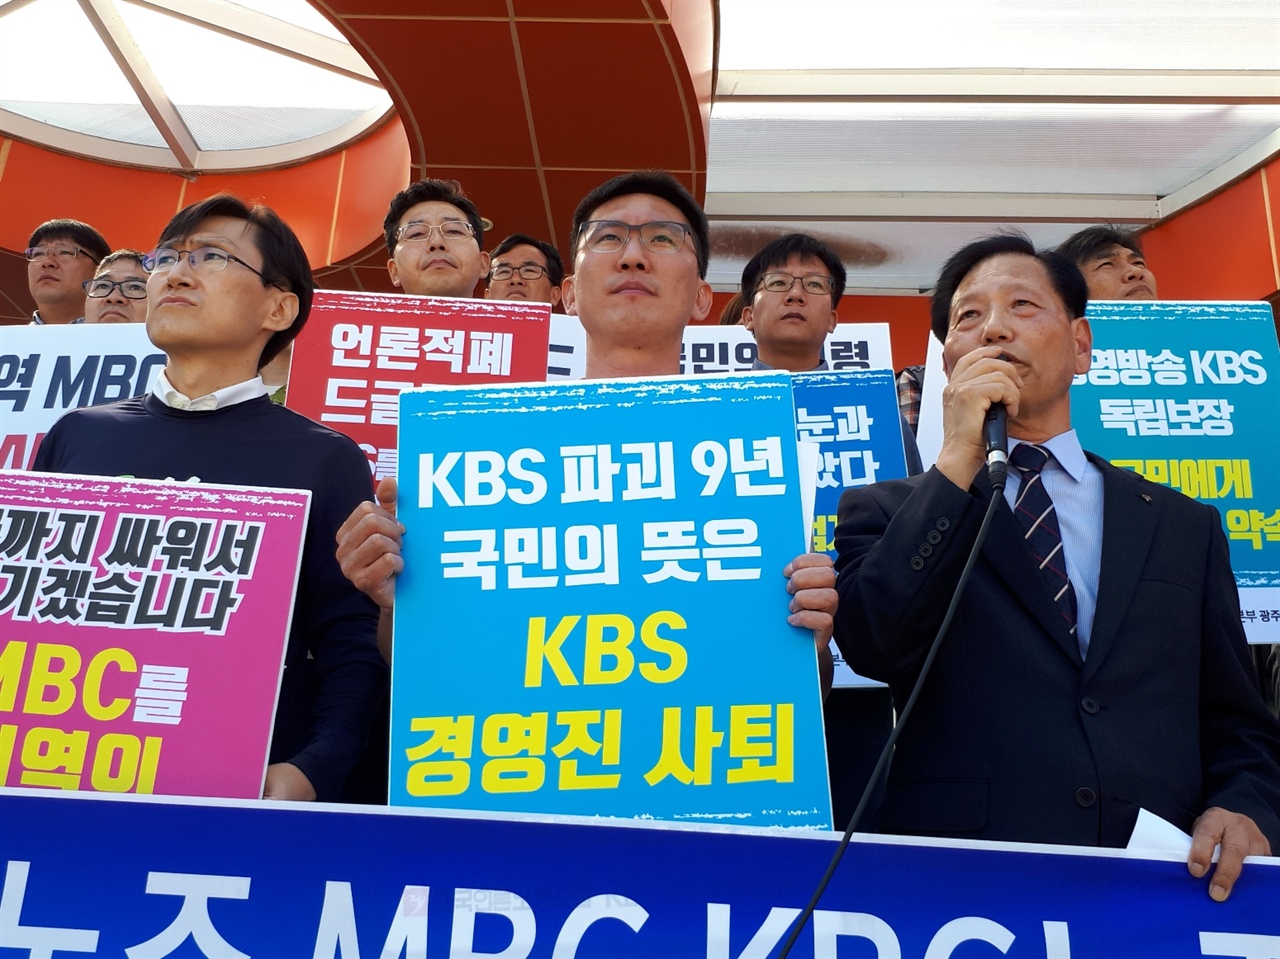 김현덕 순천YMCA 이사장이 18일 11시 순천시청에서 열린 기자회견에서 발언을 하고 있다. 사진의 좌측은 박광주 MBC 여수지부 위원장이고, 가운데가 박남용 KBS 광주전남지부 위원장이다.  